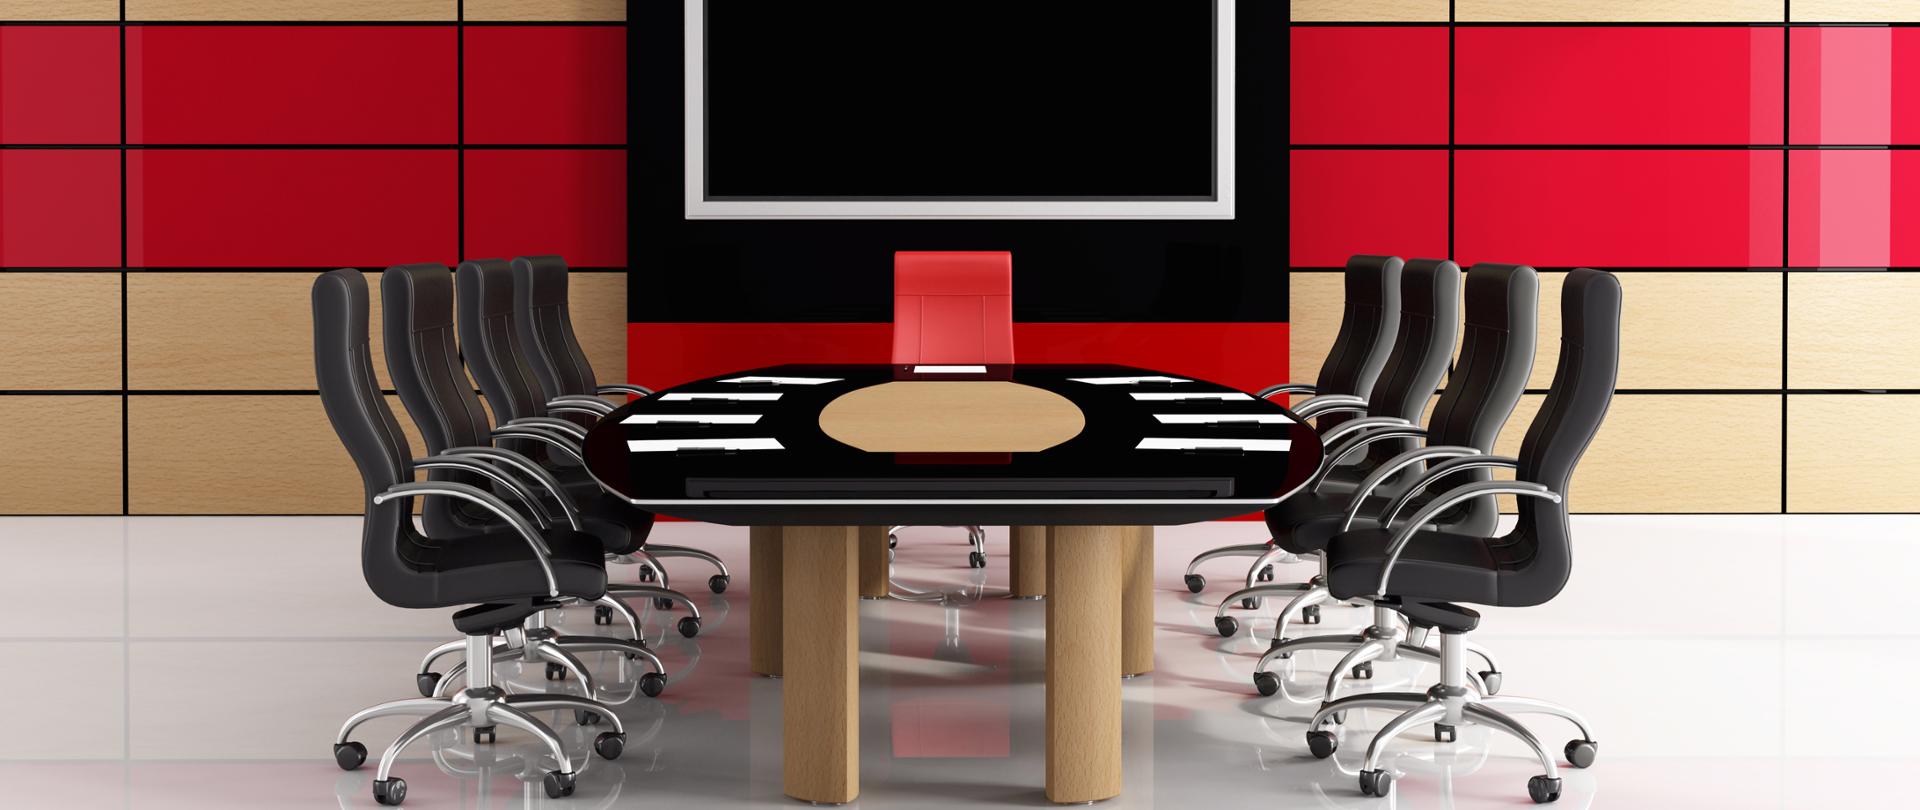 W centrum biurko a wokół czarne krzesła i jedno czerwone 